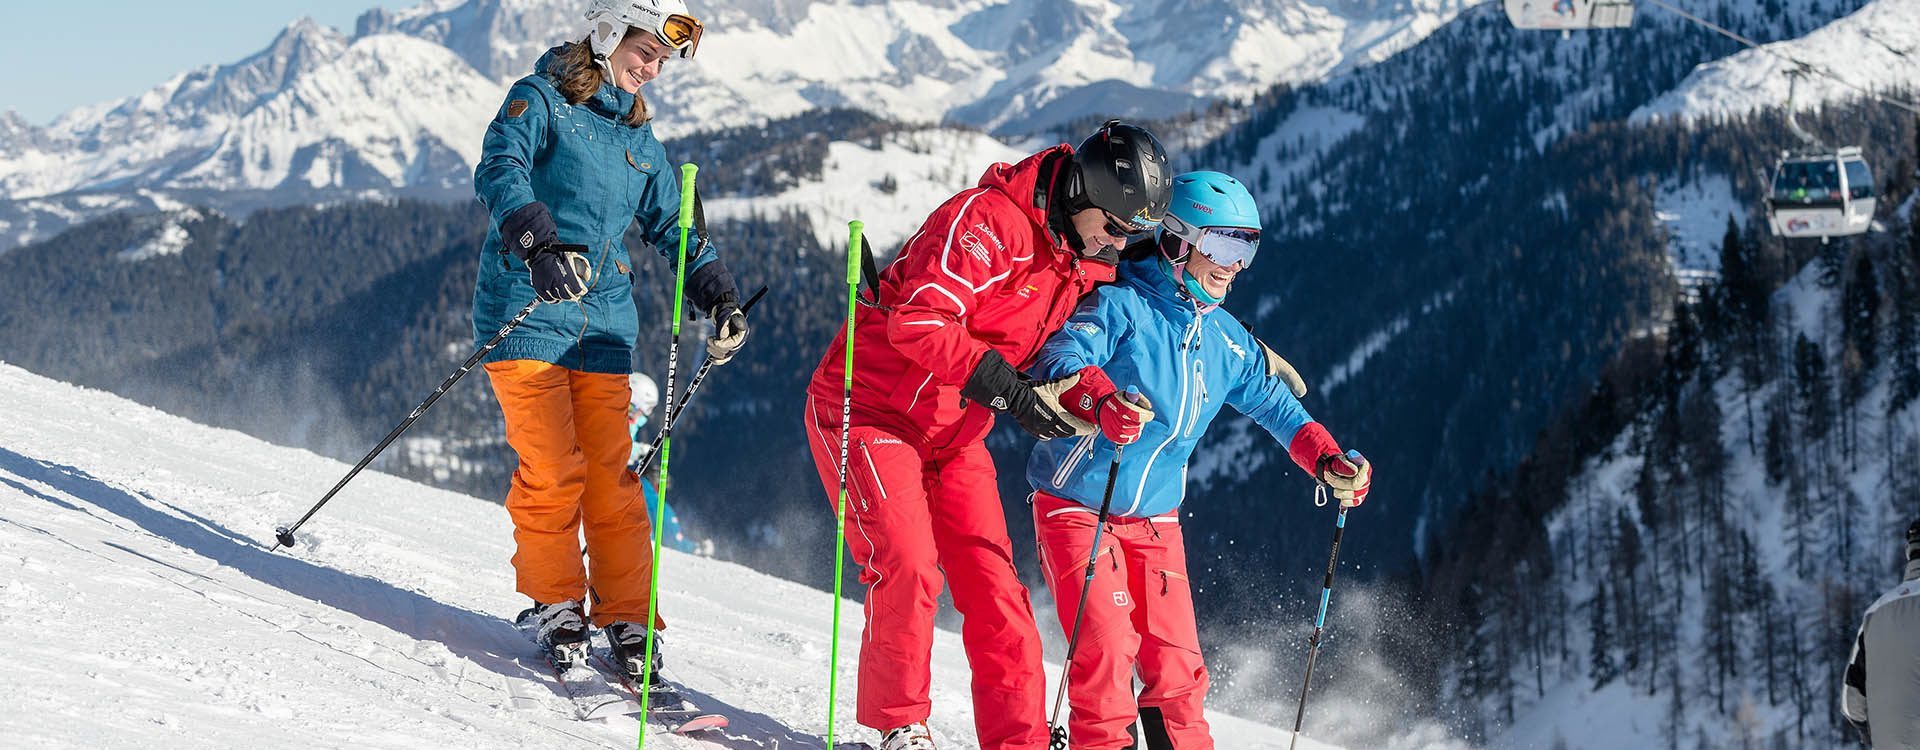 Skikurse für Kinder & Jugendliche in der Schischule Top Alpin in Altenmarkt-Zauchensee, Ski amadé